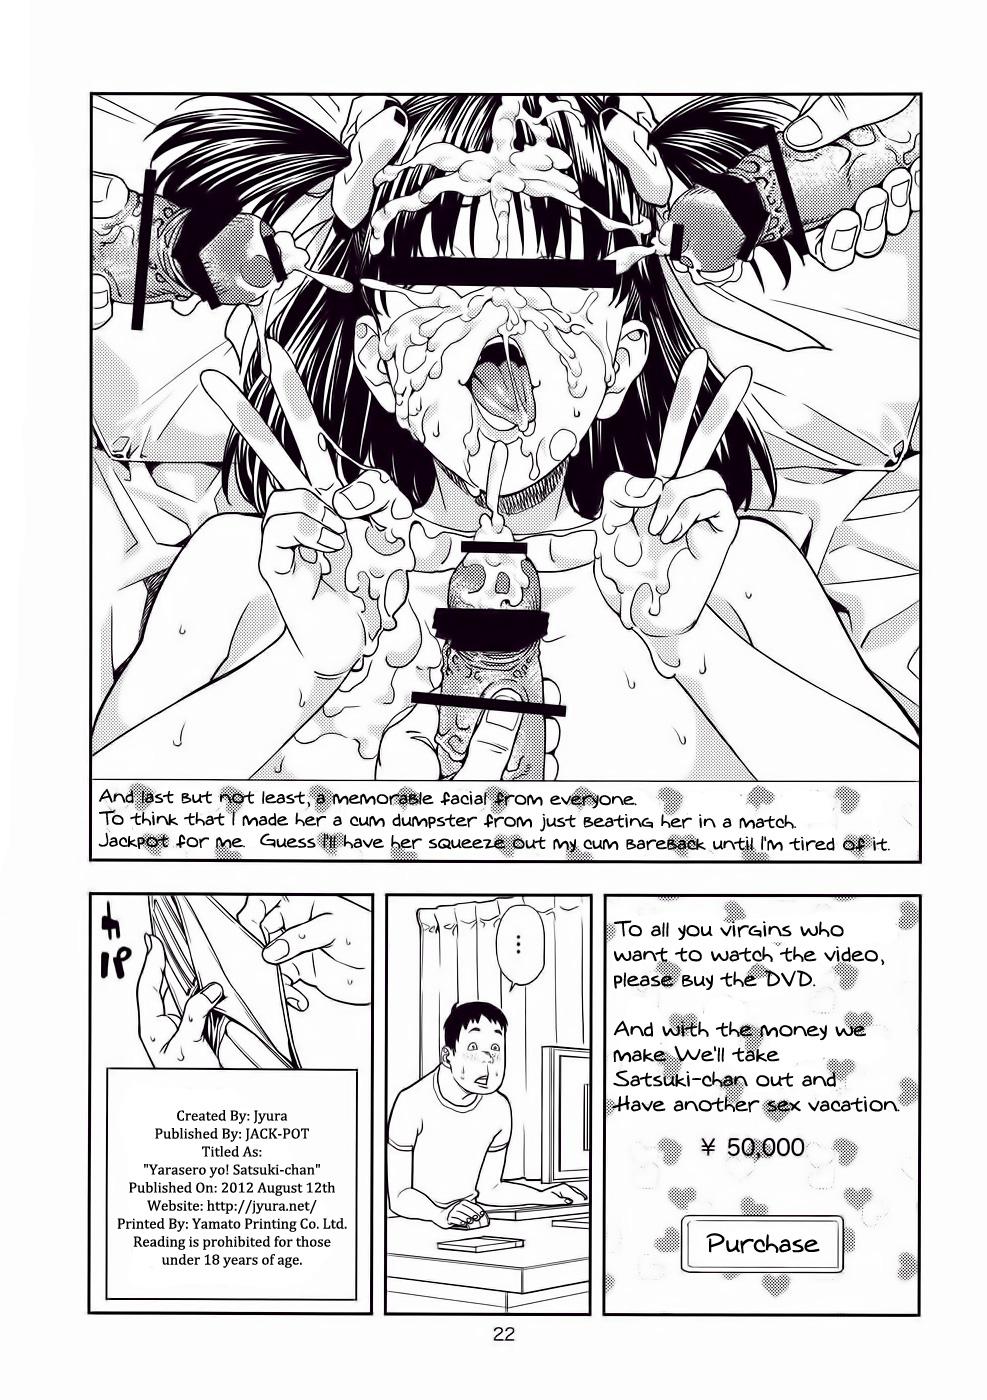 Vintage Yarasero yo! Satsuki-chan - Tsukiatte yo satsuki-chan Tats - Page 21